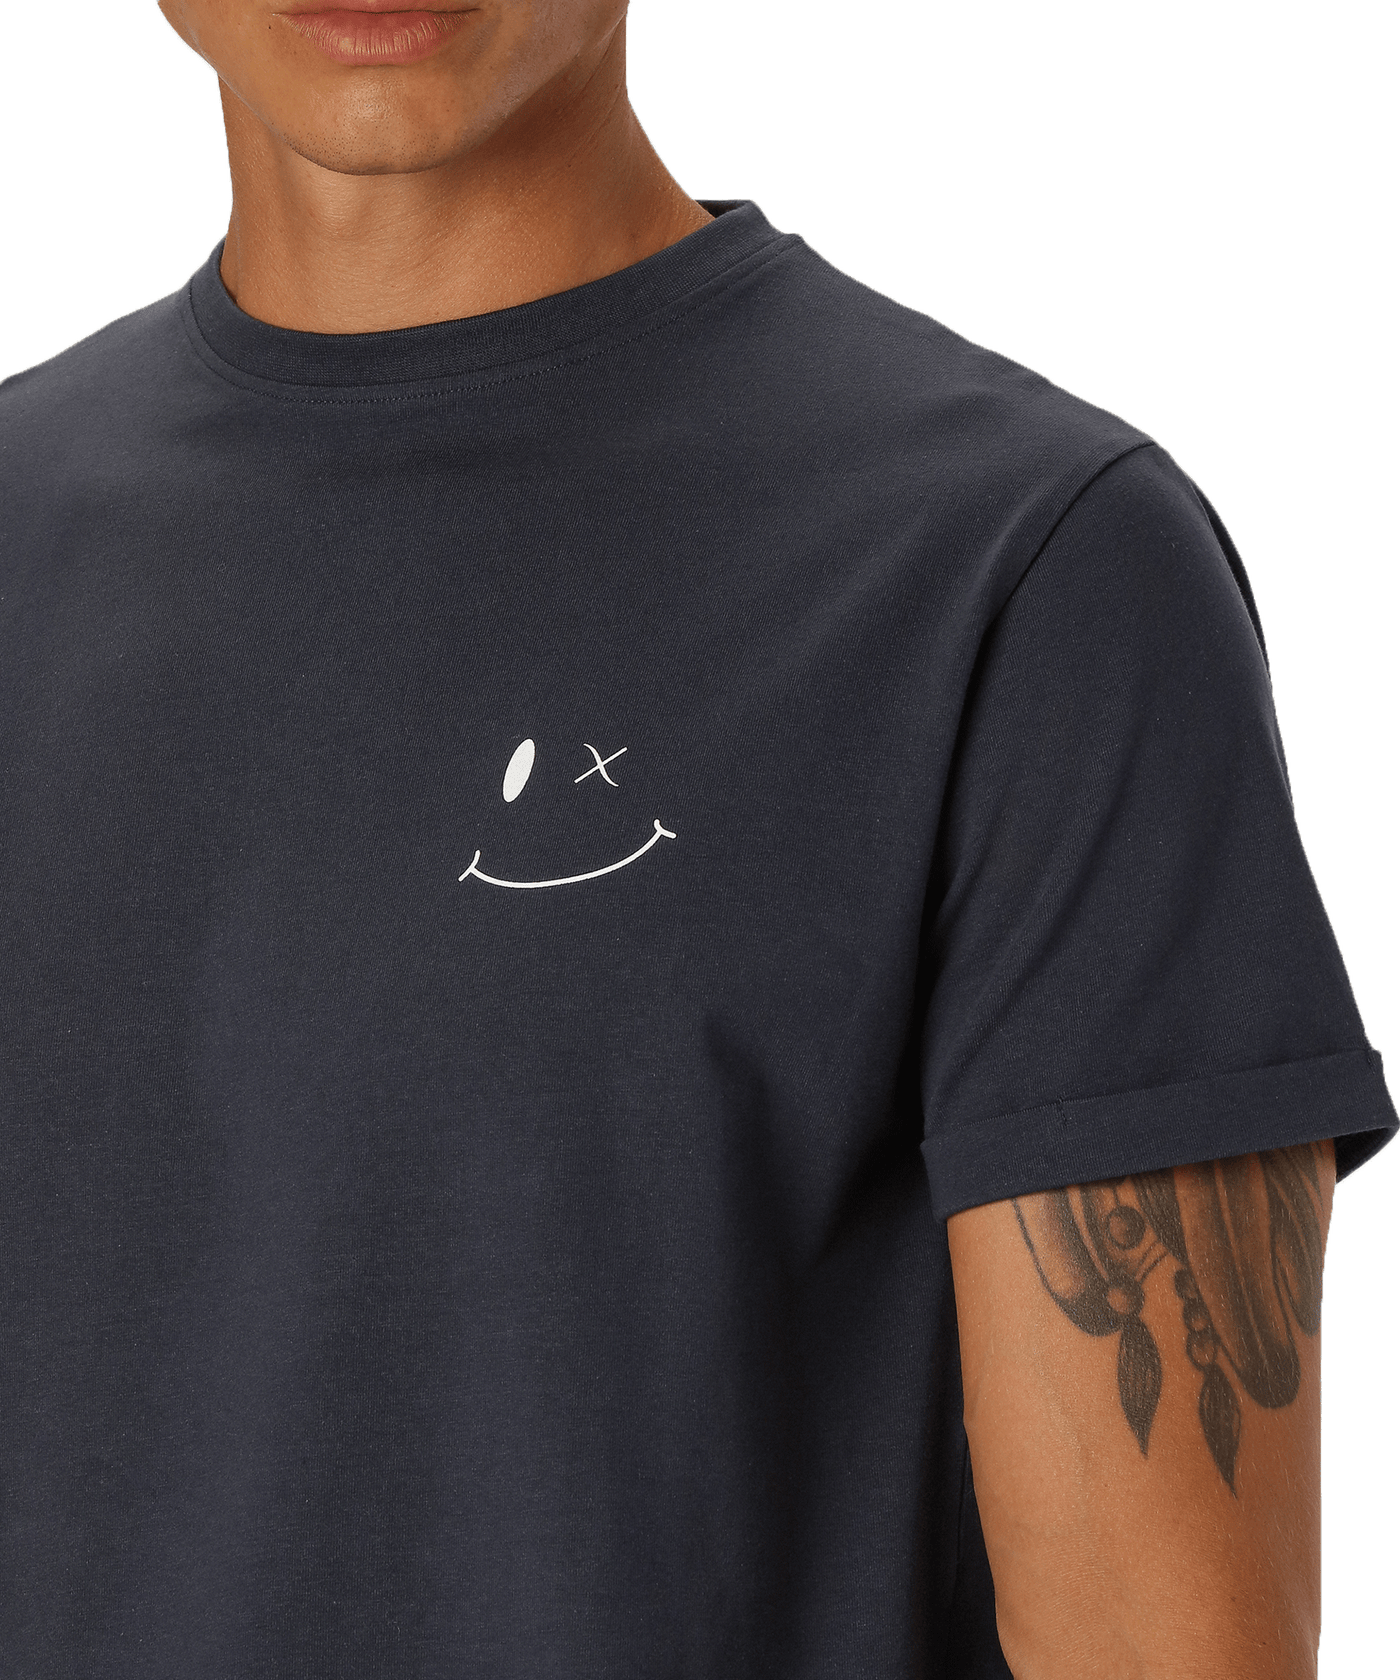 CLEANCUT - Cc2192 - Patrick Organic T-shirt - Navy